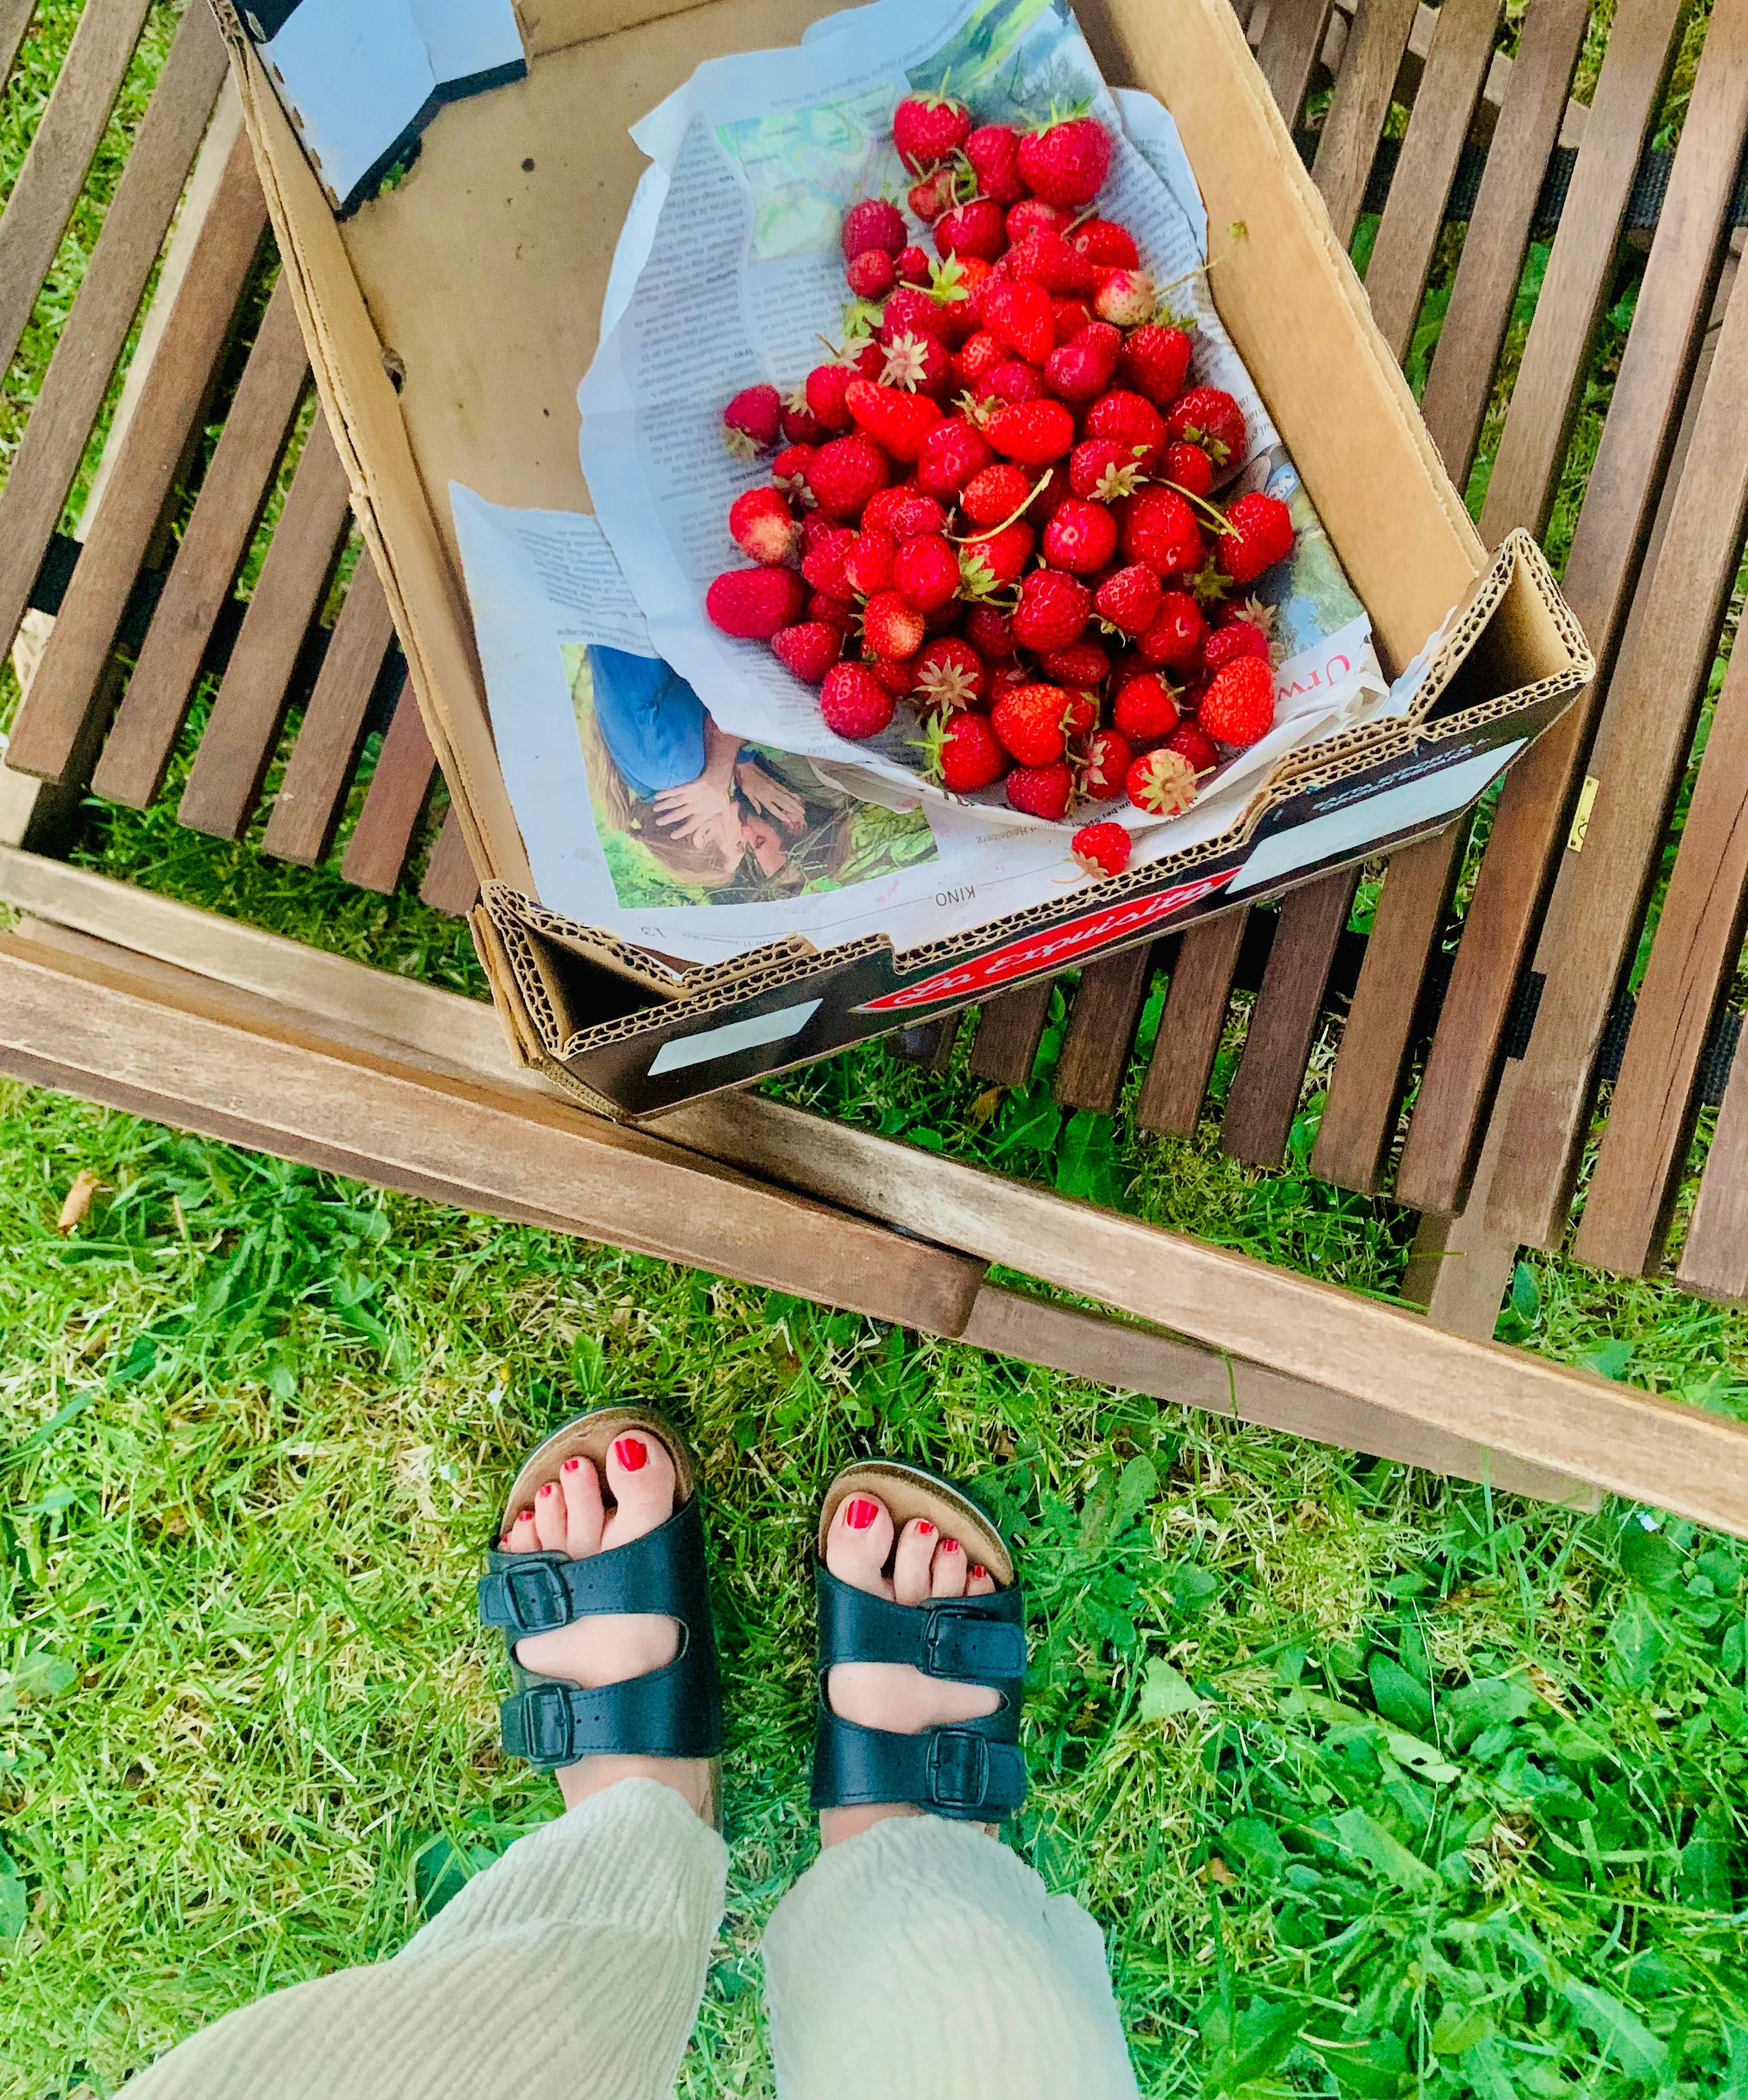 Es gibt morgen einen Erdbeerkuchen!
🍓
#erdbeeren #garten #outdoor #unsergarten #ernte 